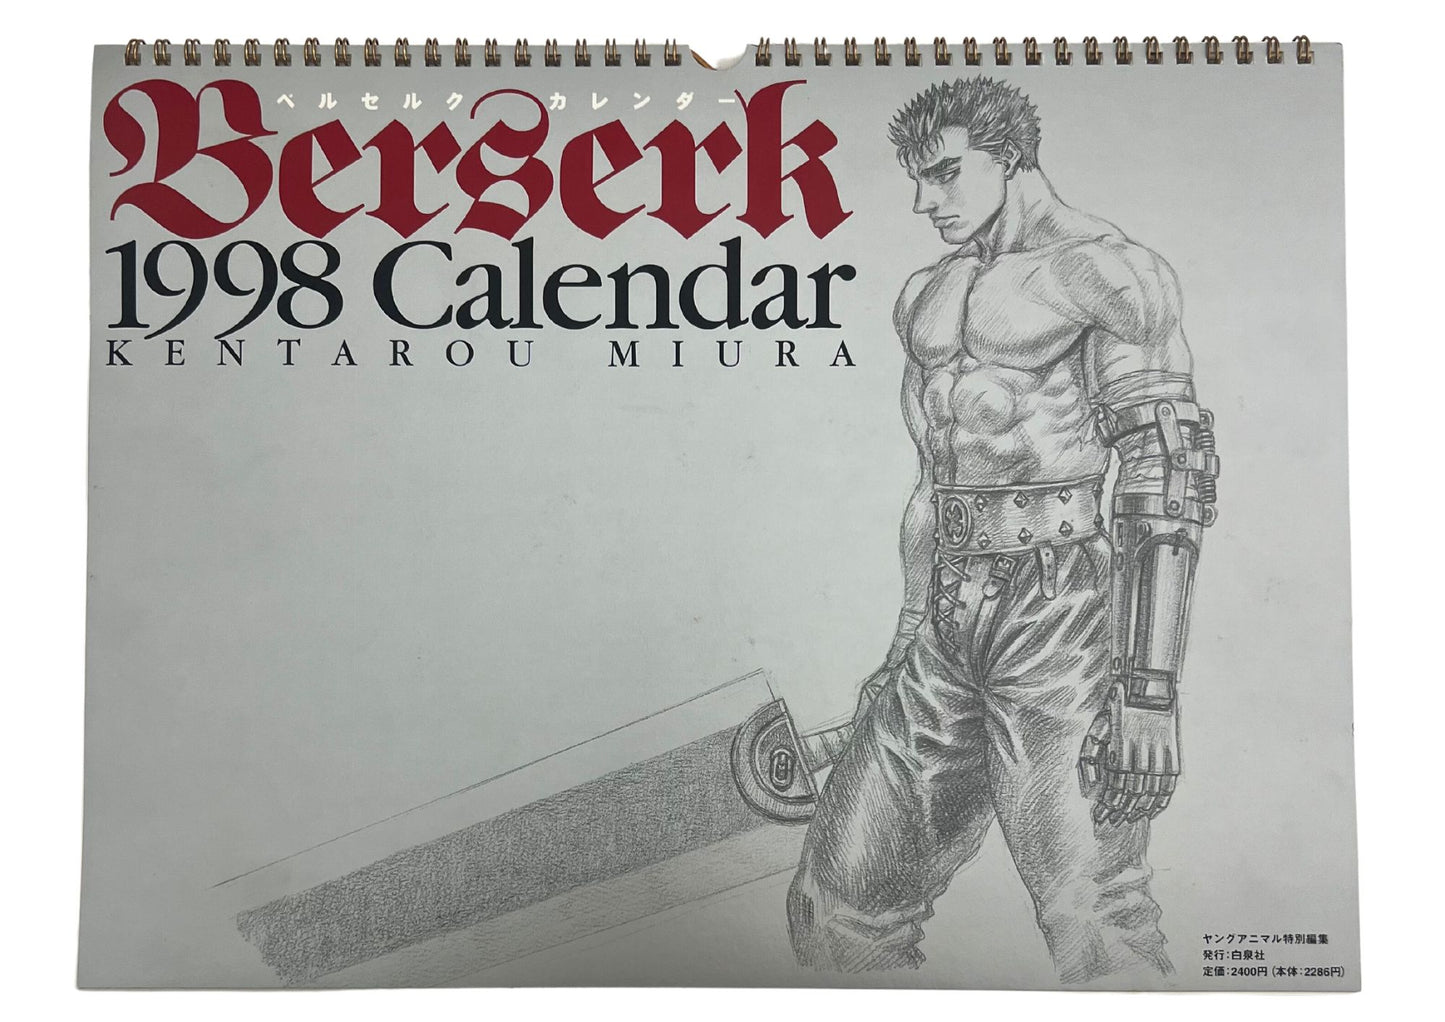 Berserk 1998 Calendar Kentaro Miura